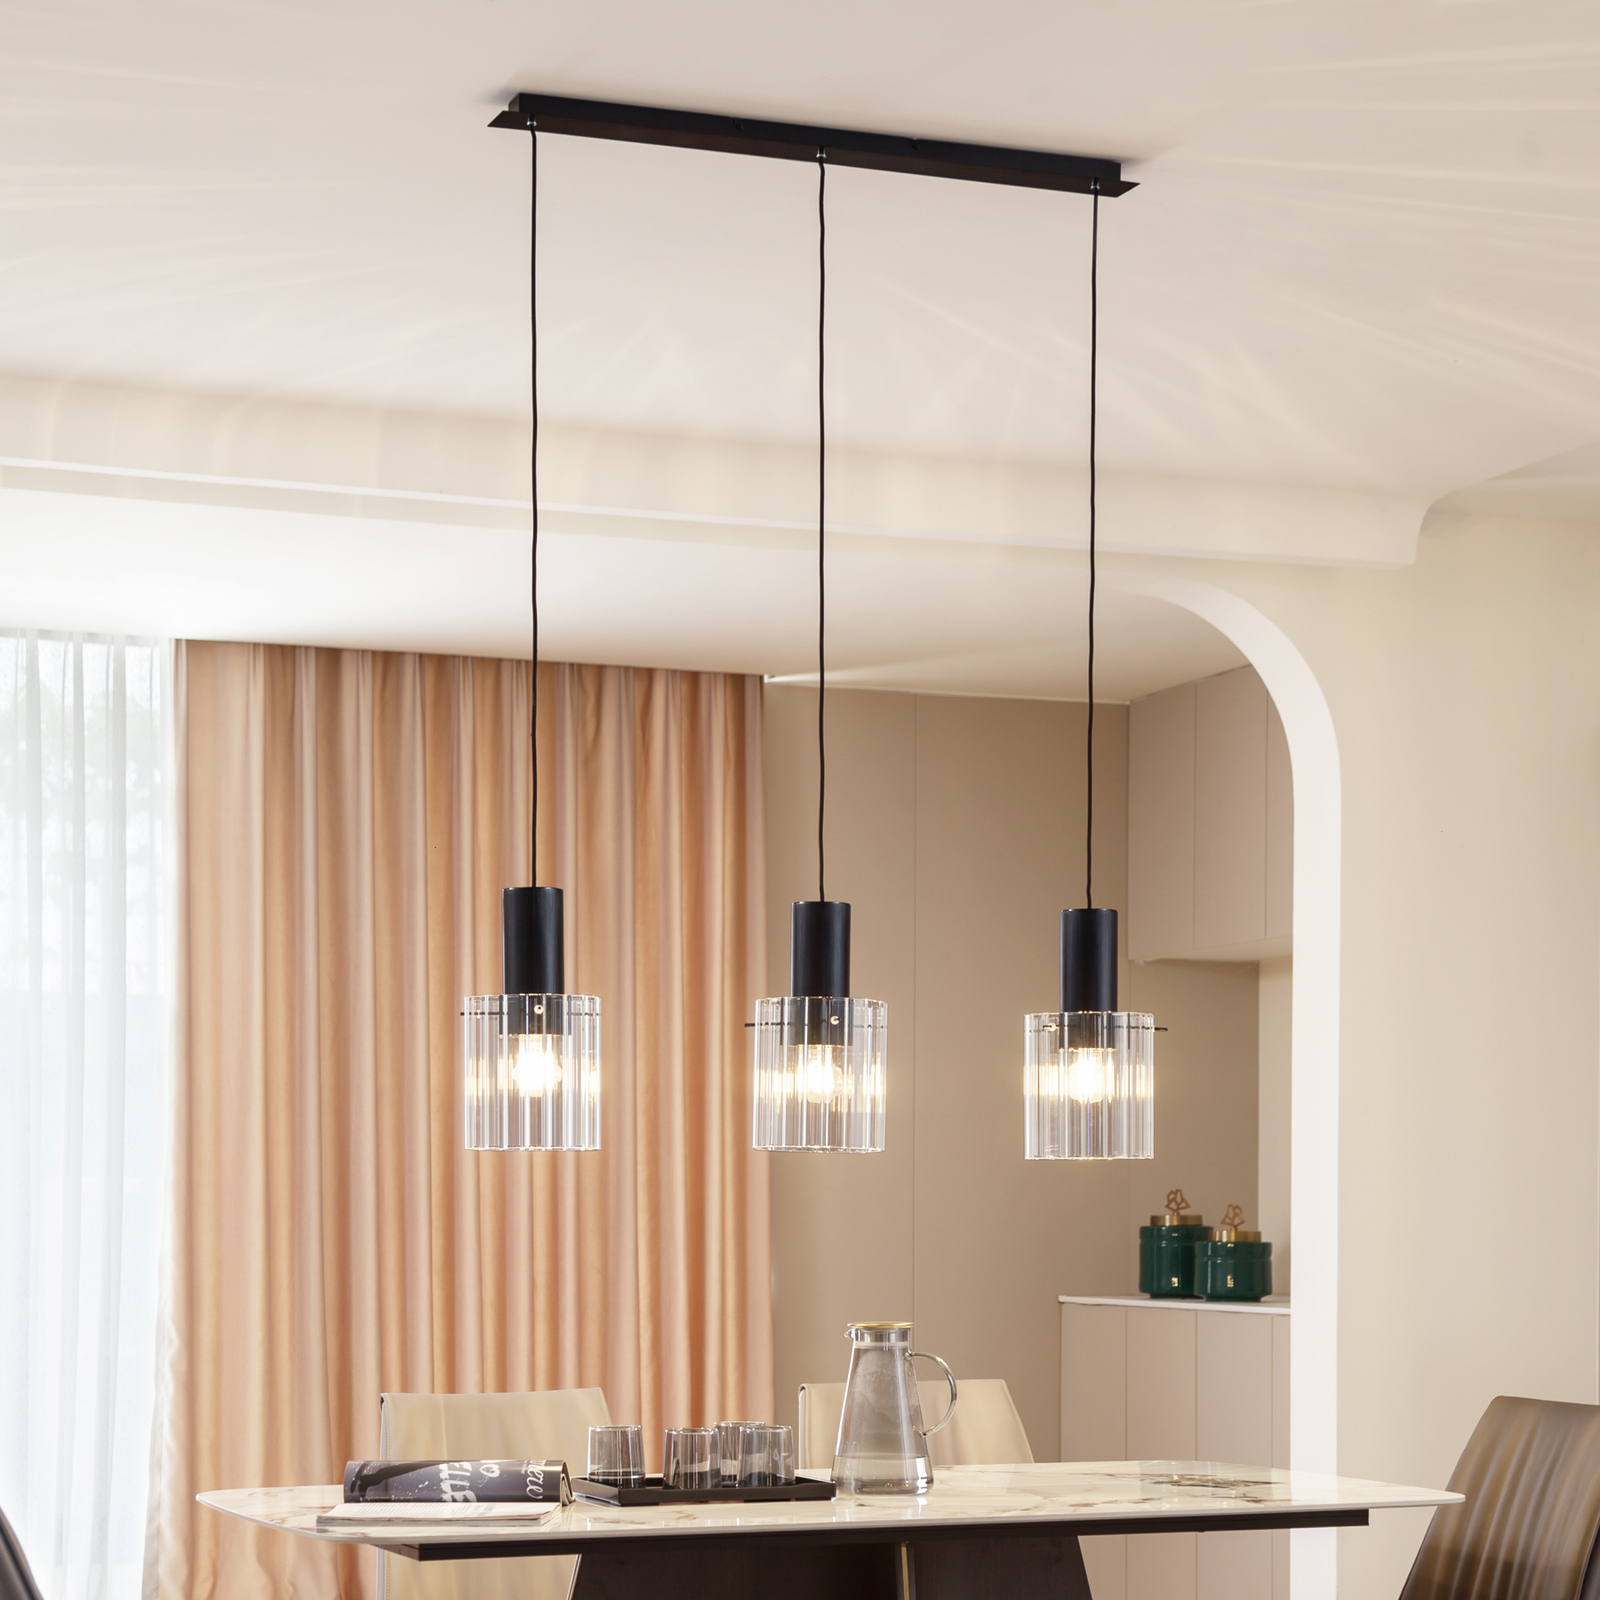 Lucande hanglamp Eirian, 90 cm, 3-lamps, zwart, glas